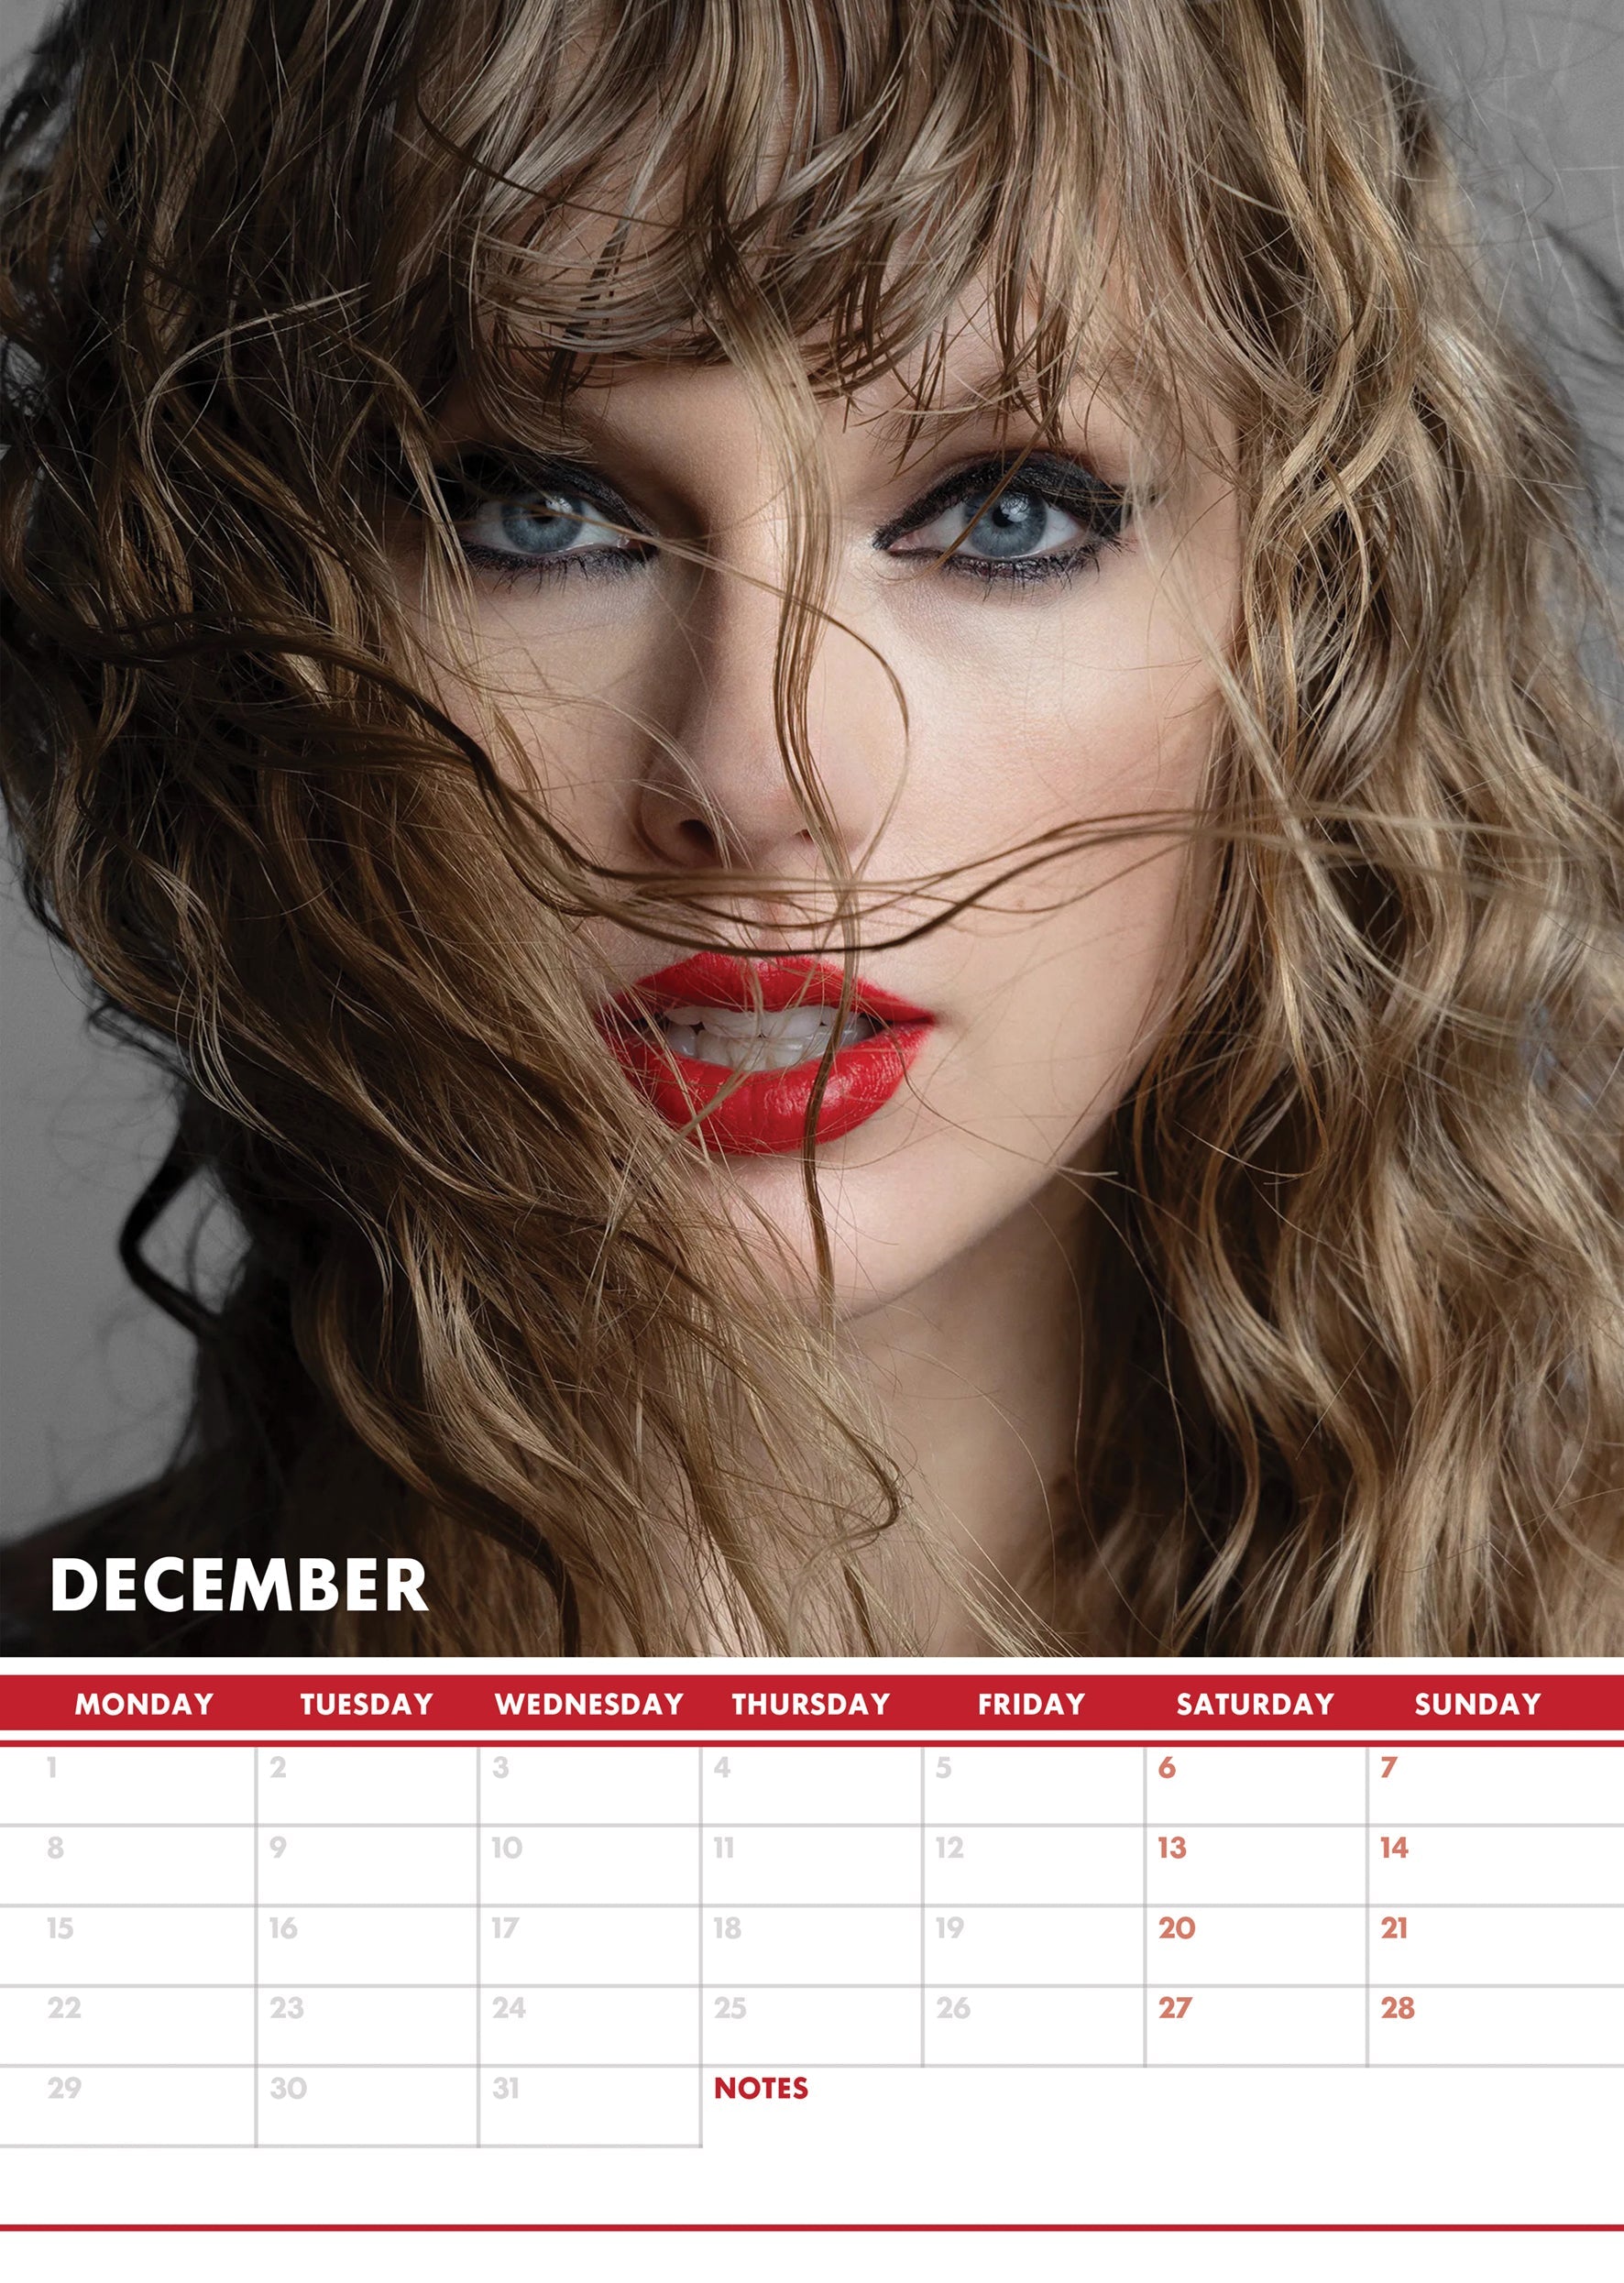 2025 Taylor Swift - A3 Wall Calendar